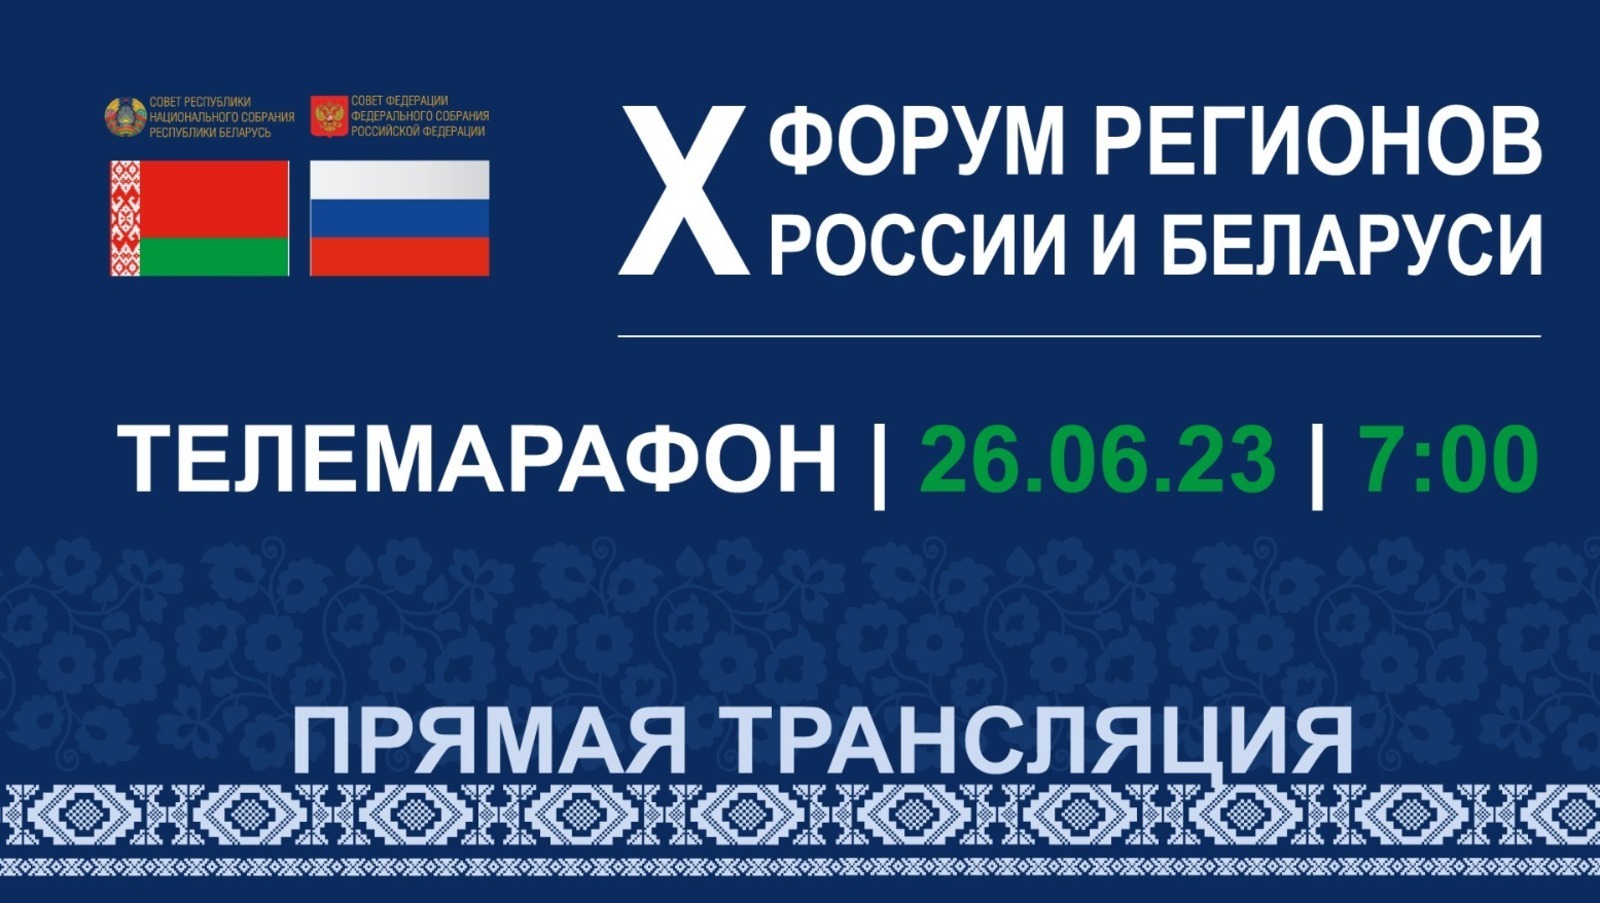 Телеканал БСТ покажет трансляции с X форума регионов России и Беларуси